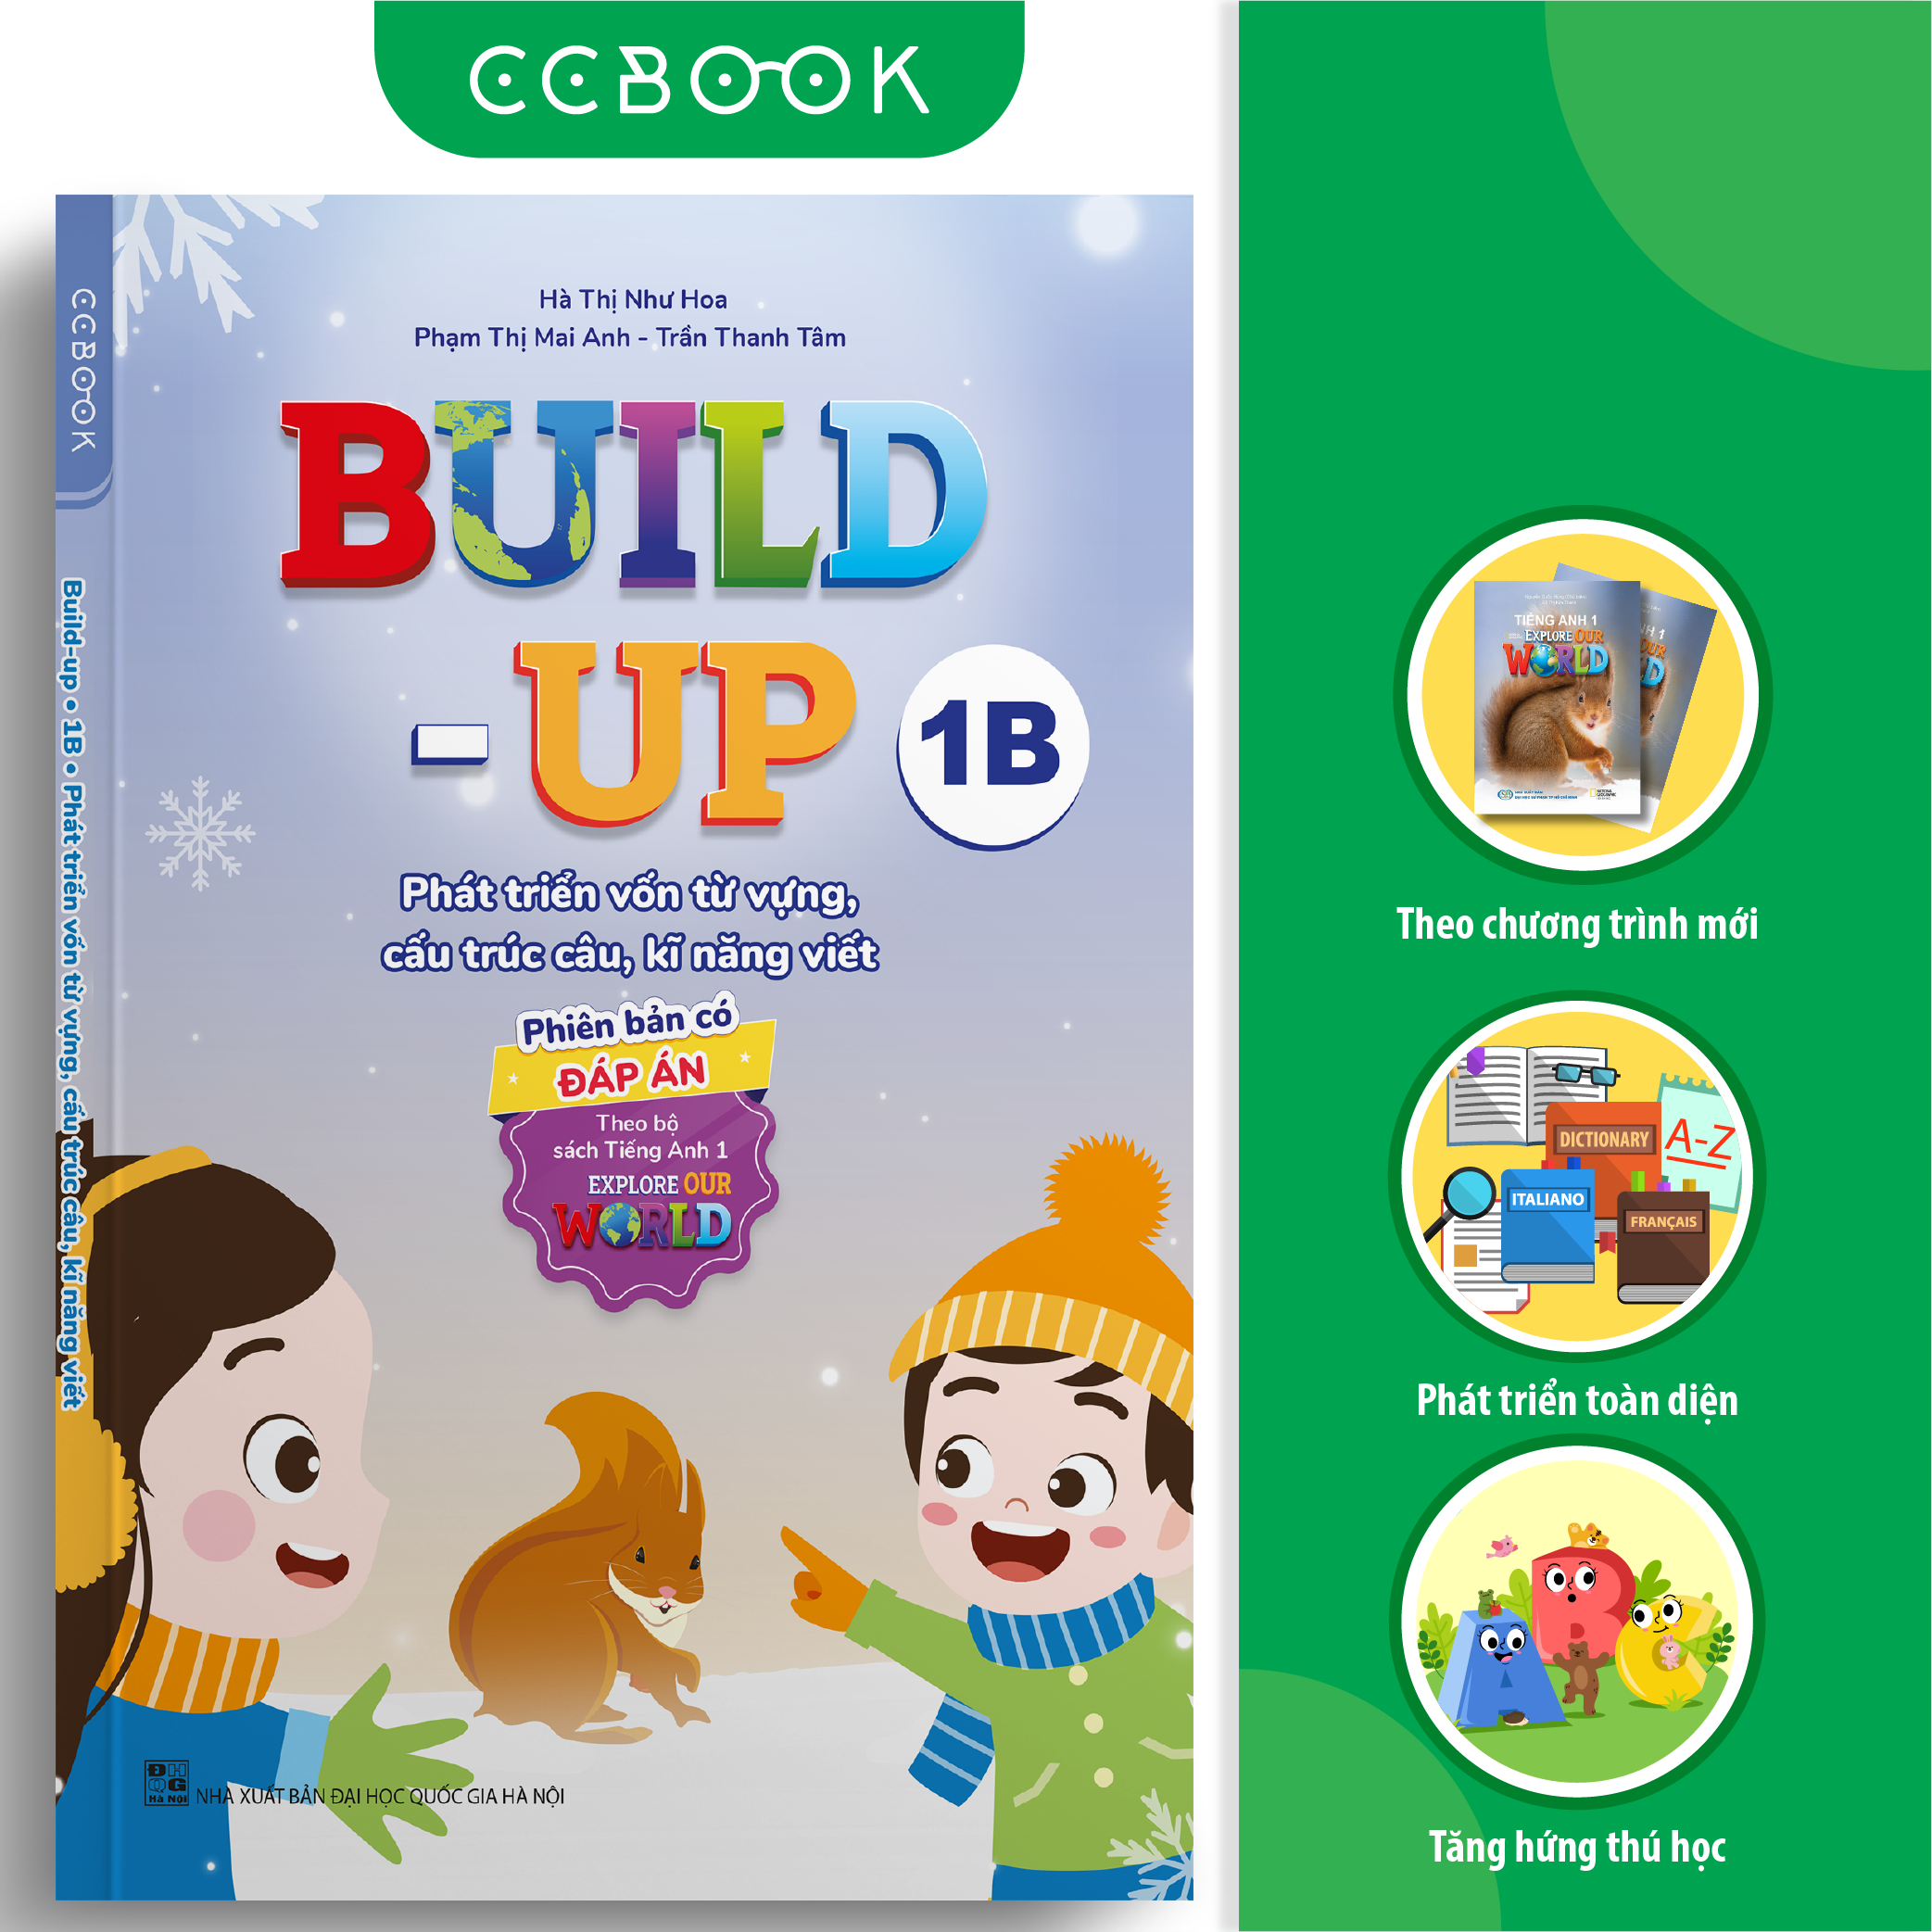 Build-up 1B Phát triển vốn từ vựng, cấu trúc câu, kĩ năng viết (Phiên bản CÓ đáp án) (Theo bộ sách Tiếng Anh 1 - Explore our world)